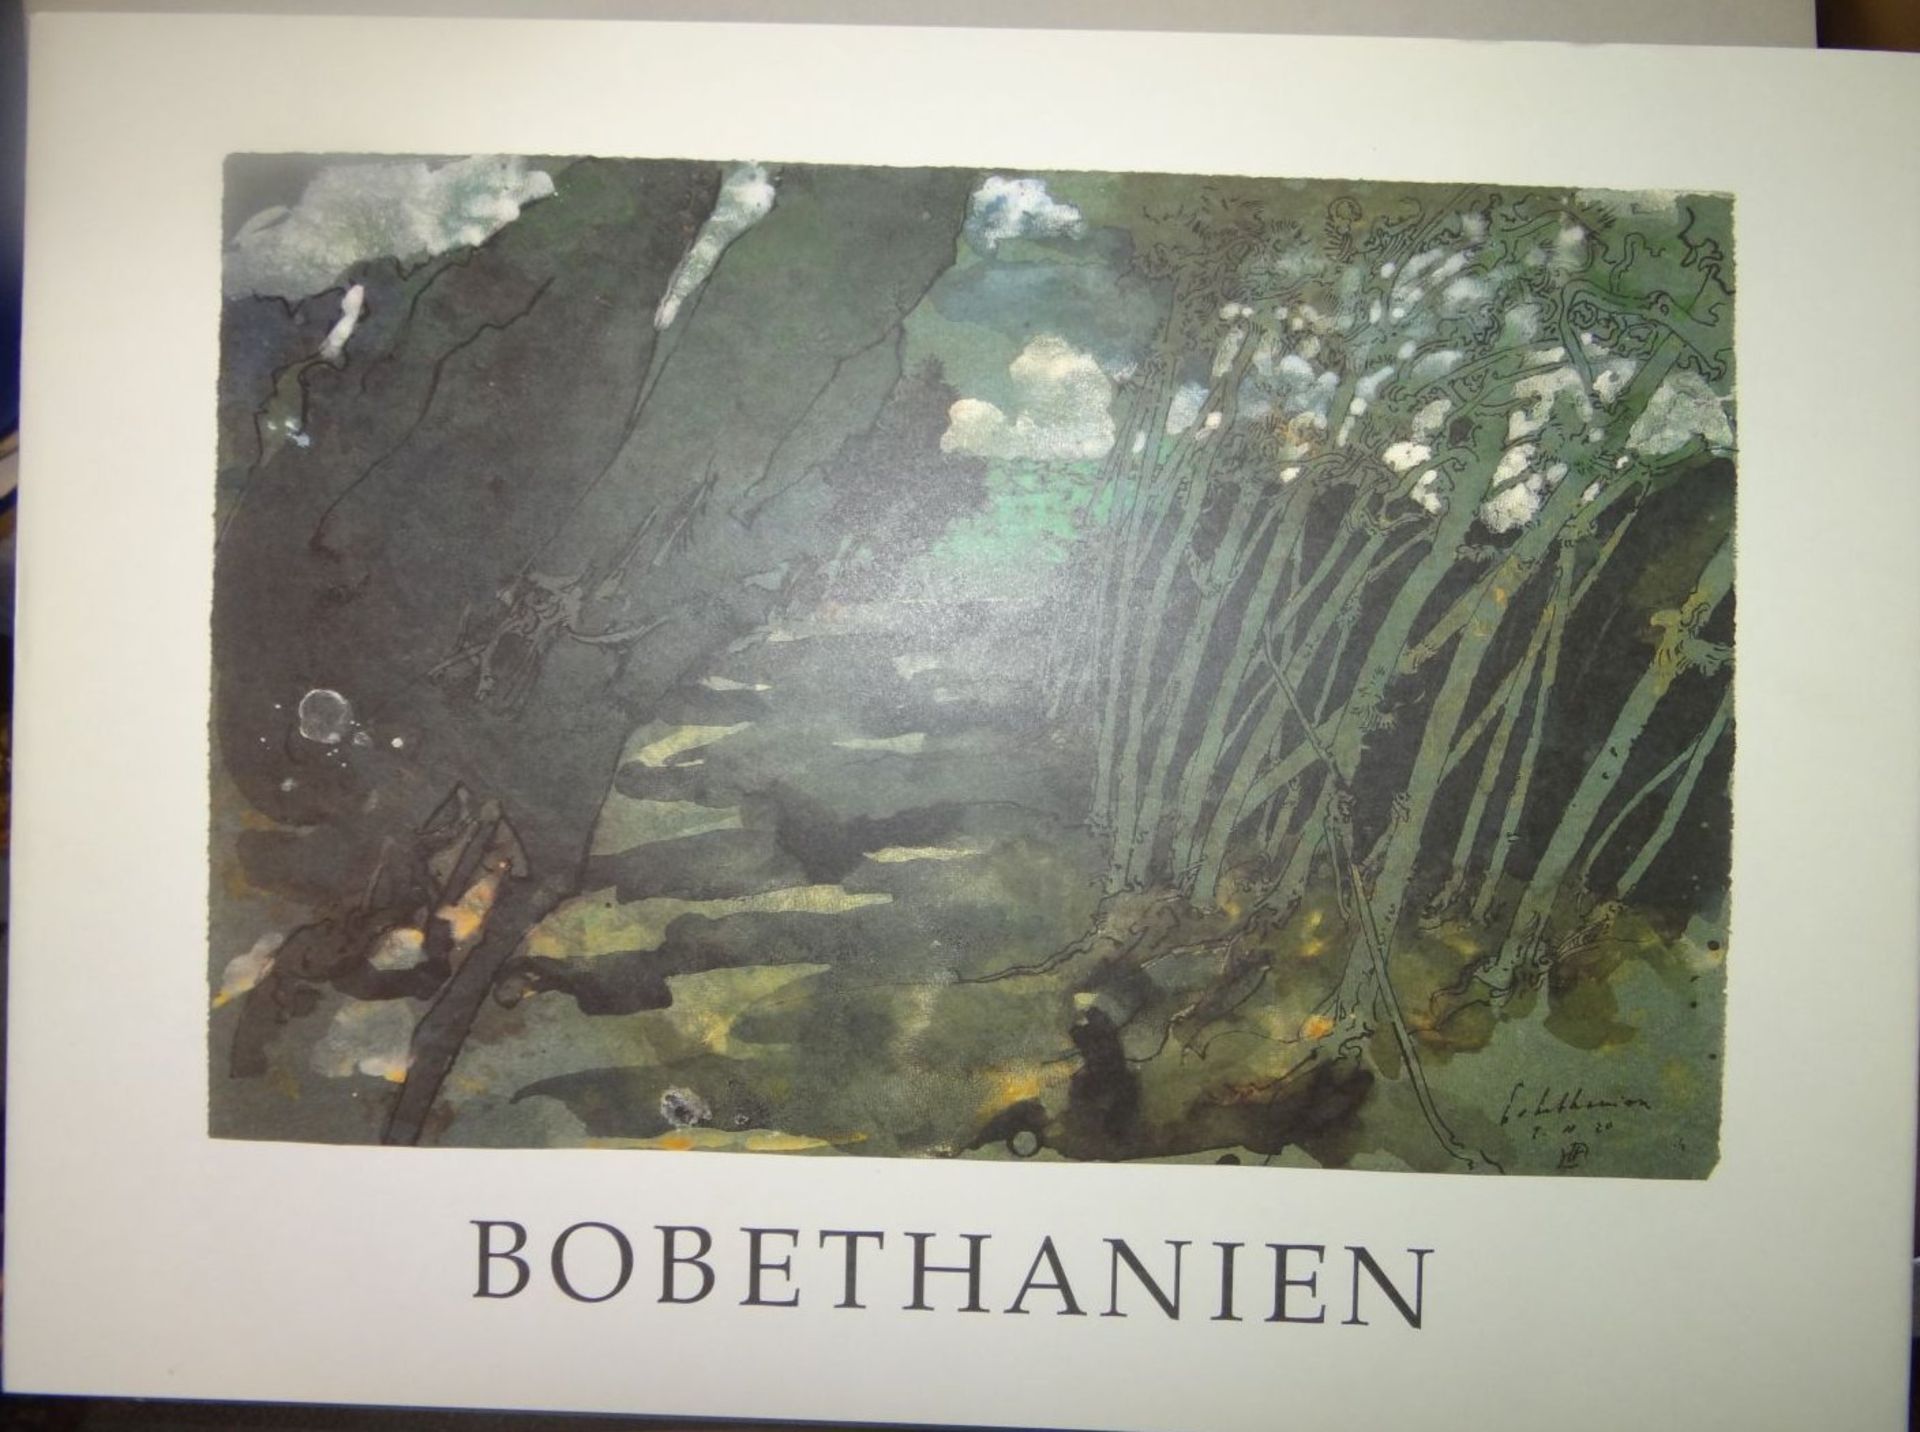 Horst JANSSEN (1929-1995), "Bobethanien" neuwertig im Schuber, 32x42 cm- - -22.61 % buyer's